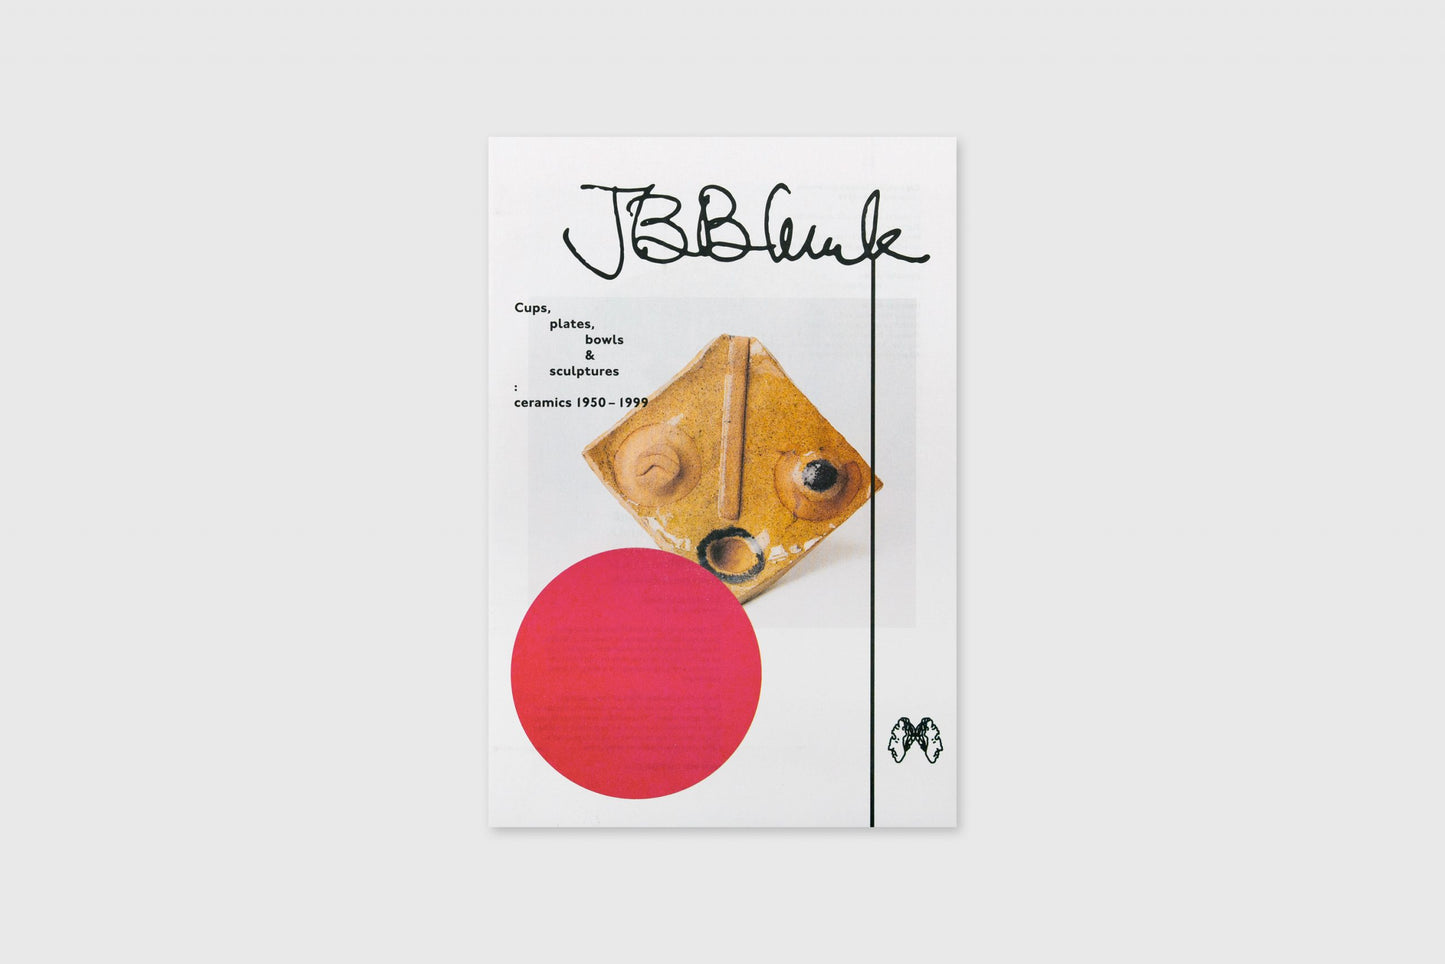 JB Blunk Cups plates bowls & sculptures: ceramics 1950 - 1999 (3rd Edition)